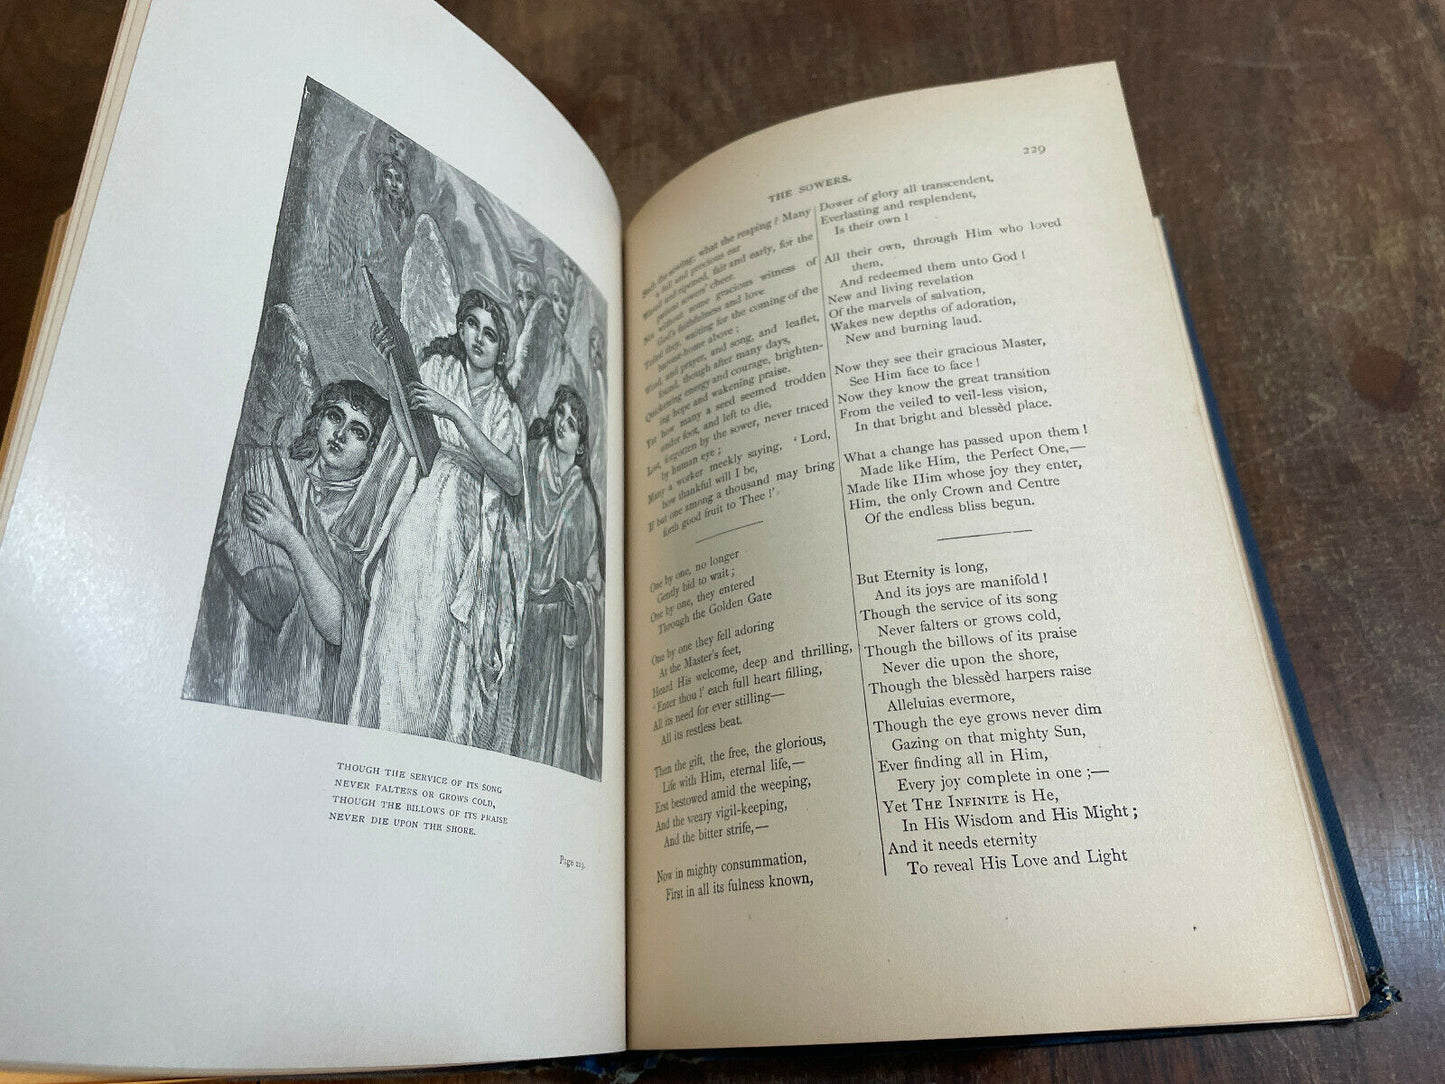 Poems by Frances Ridley Havergal 1885 E. P. Dutton & Co. Antique Book (4A)